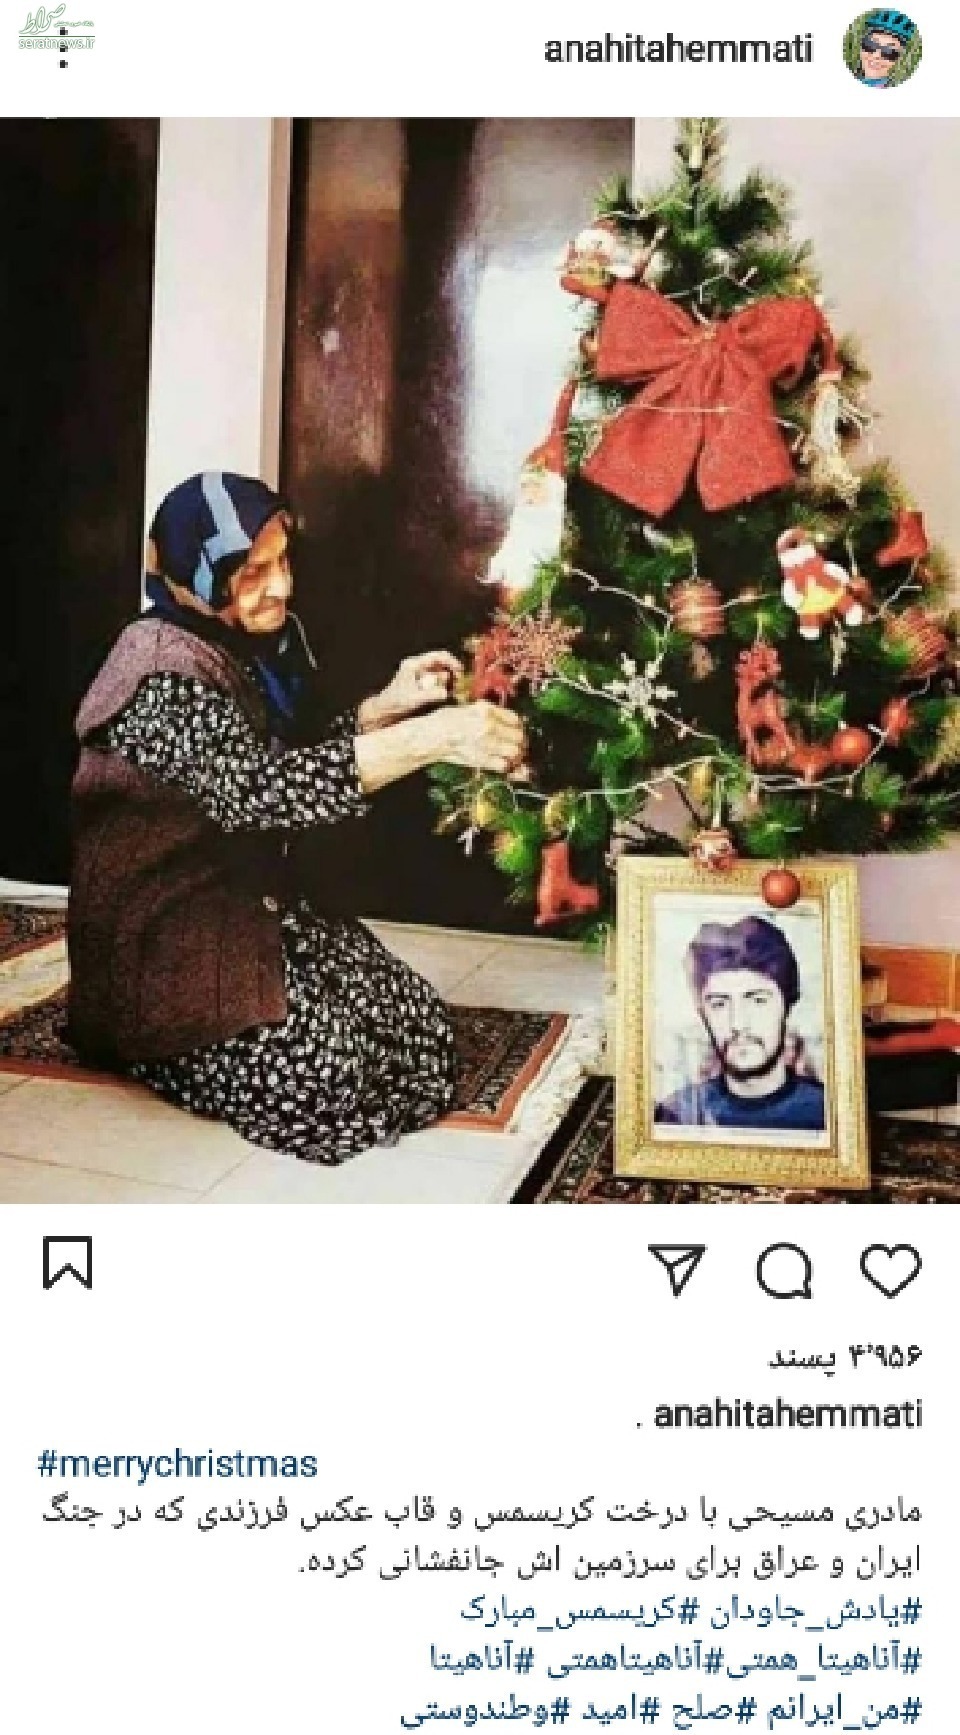 عکس/ مادر شهید مسیحی در کنار درخت کریسمس و قاب عکس پسرش